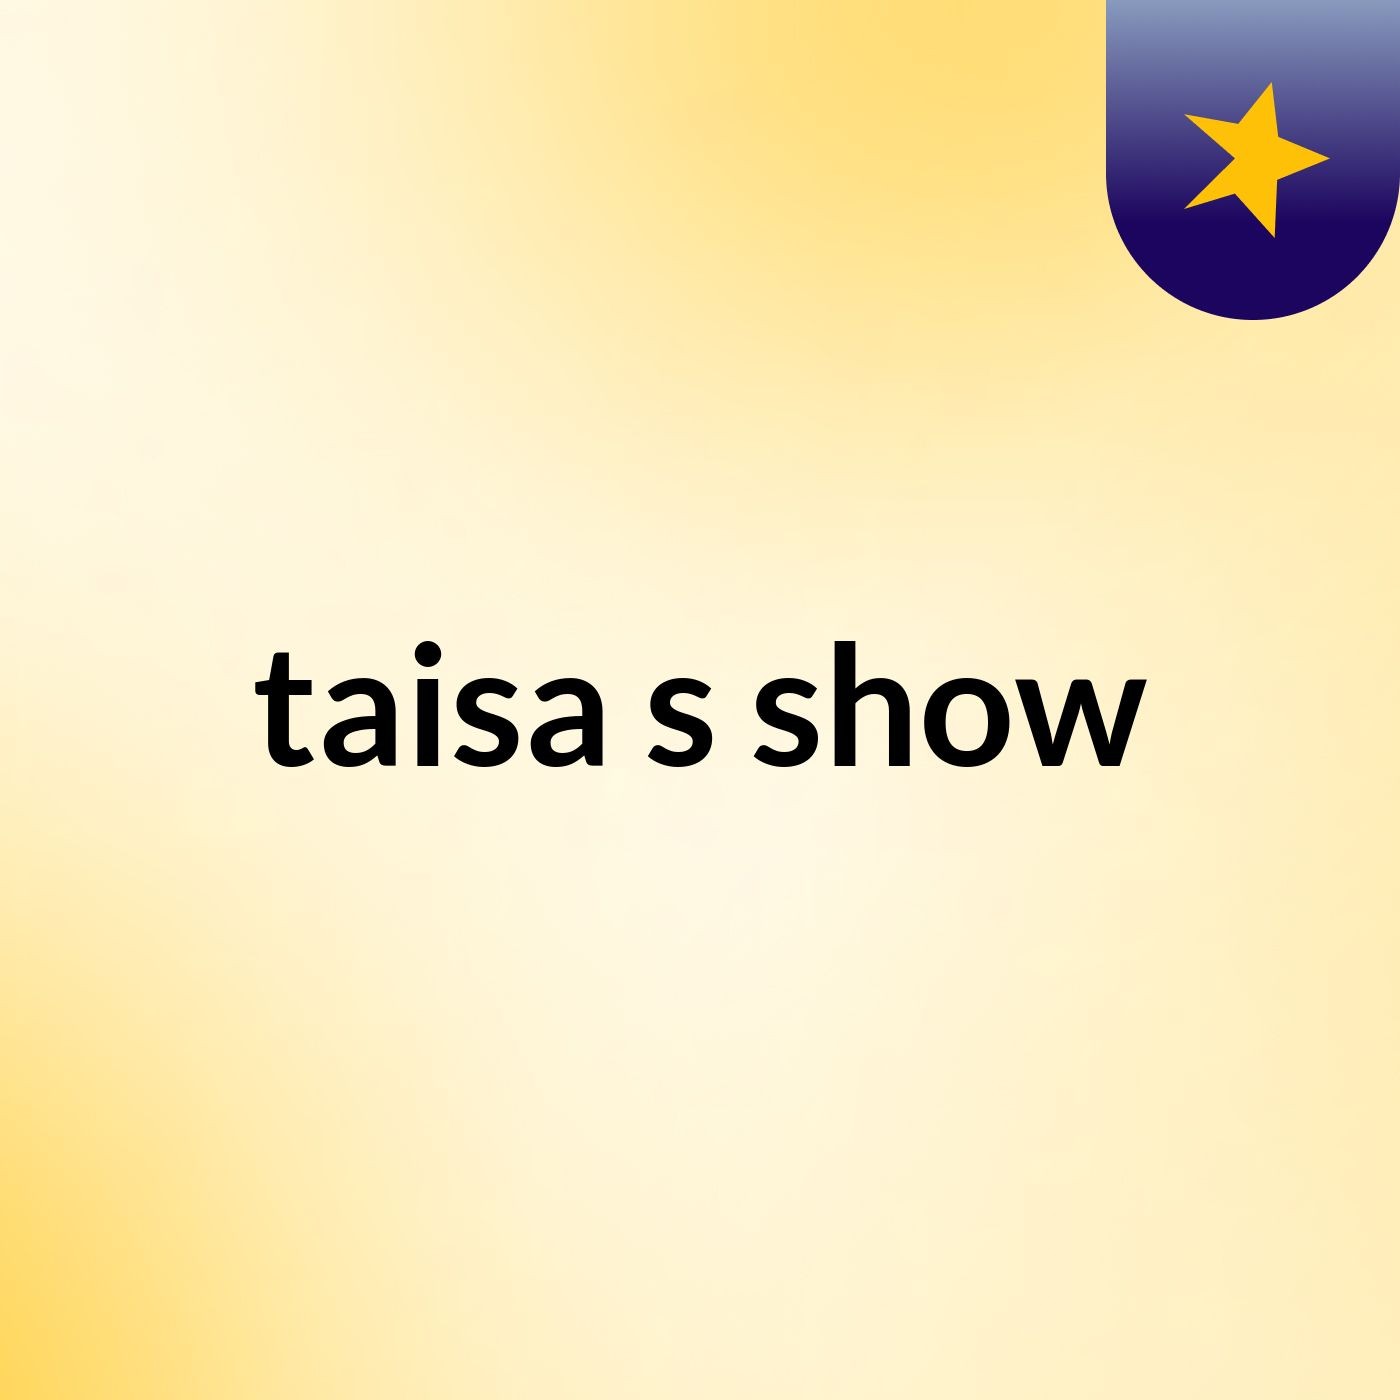 taisa's show